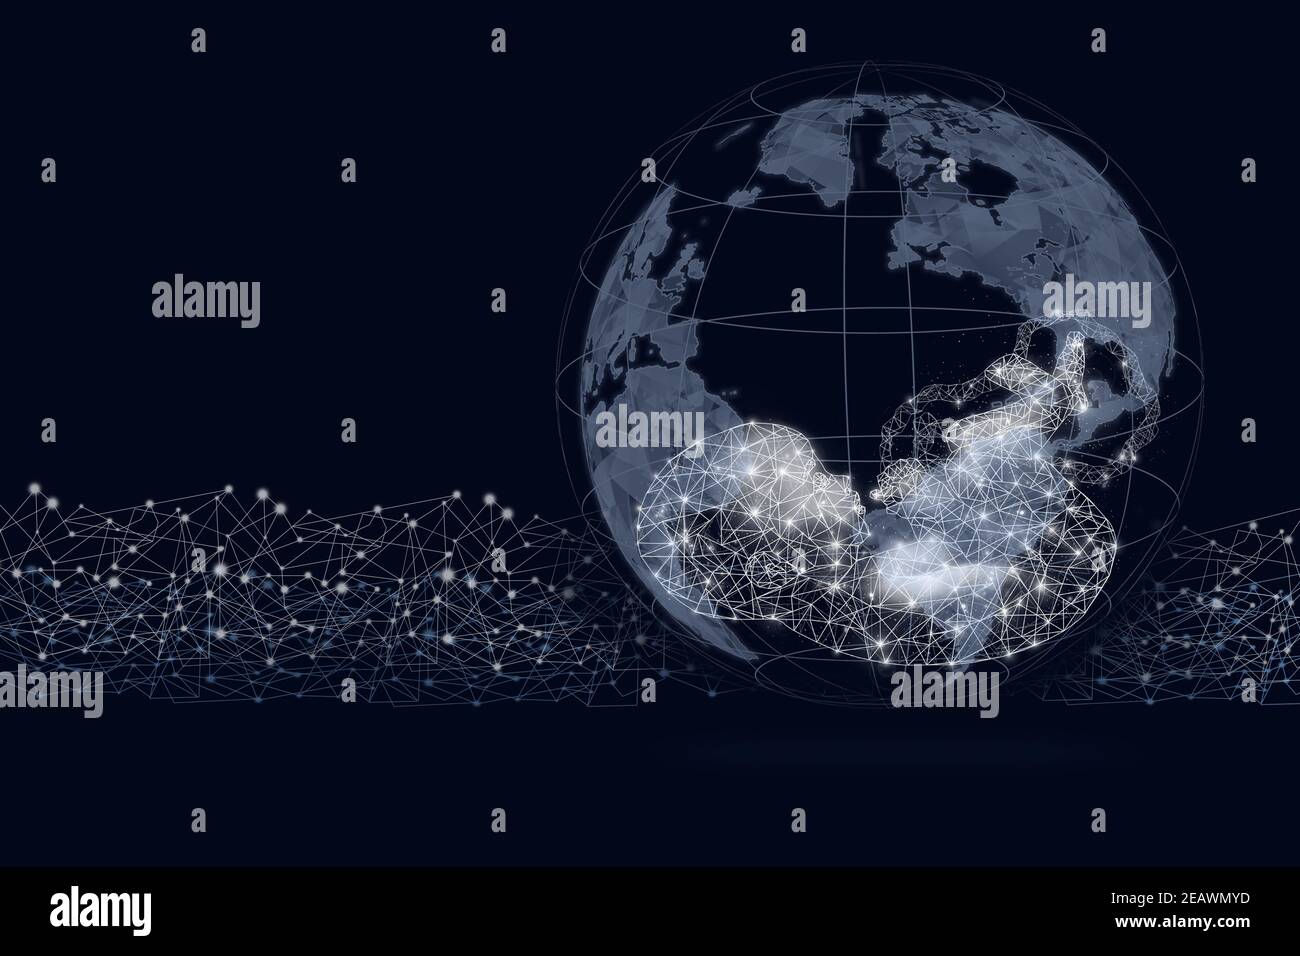 Weltkugel-Form mit Gologramm Fötus auf dunkelblauem Hintergrund. Leben auf der Erde - Umwelt und Ökologie Konzept. Stockfoto